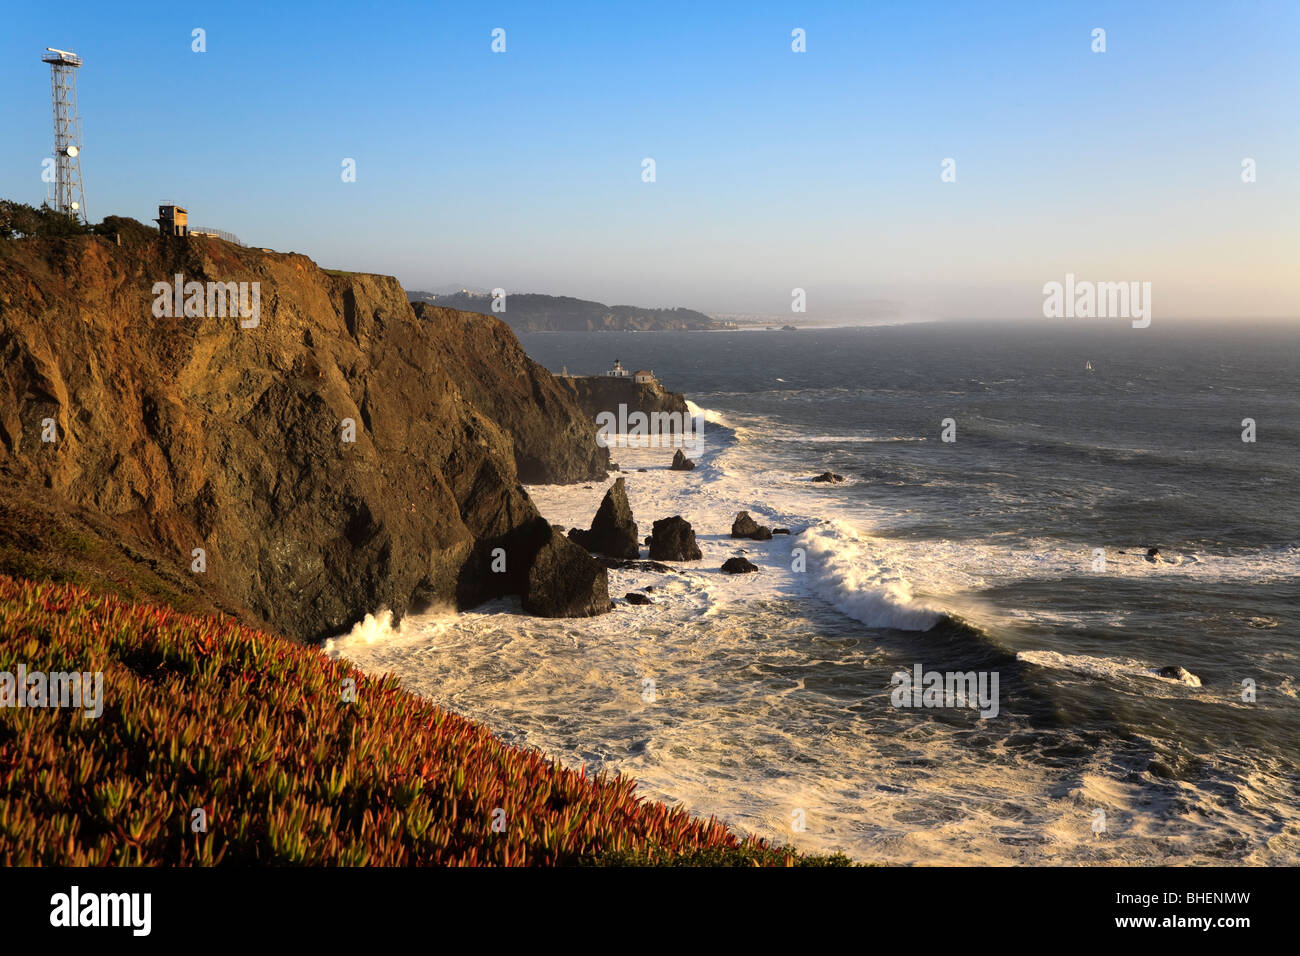 Les vagues déferlent sur à Cliffs at Golden Gate National Recreation Area. Et c'est point Bonita lighthouse sont dans la distance. Banque D'Images